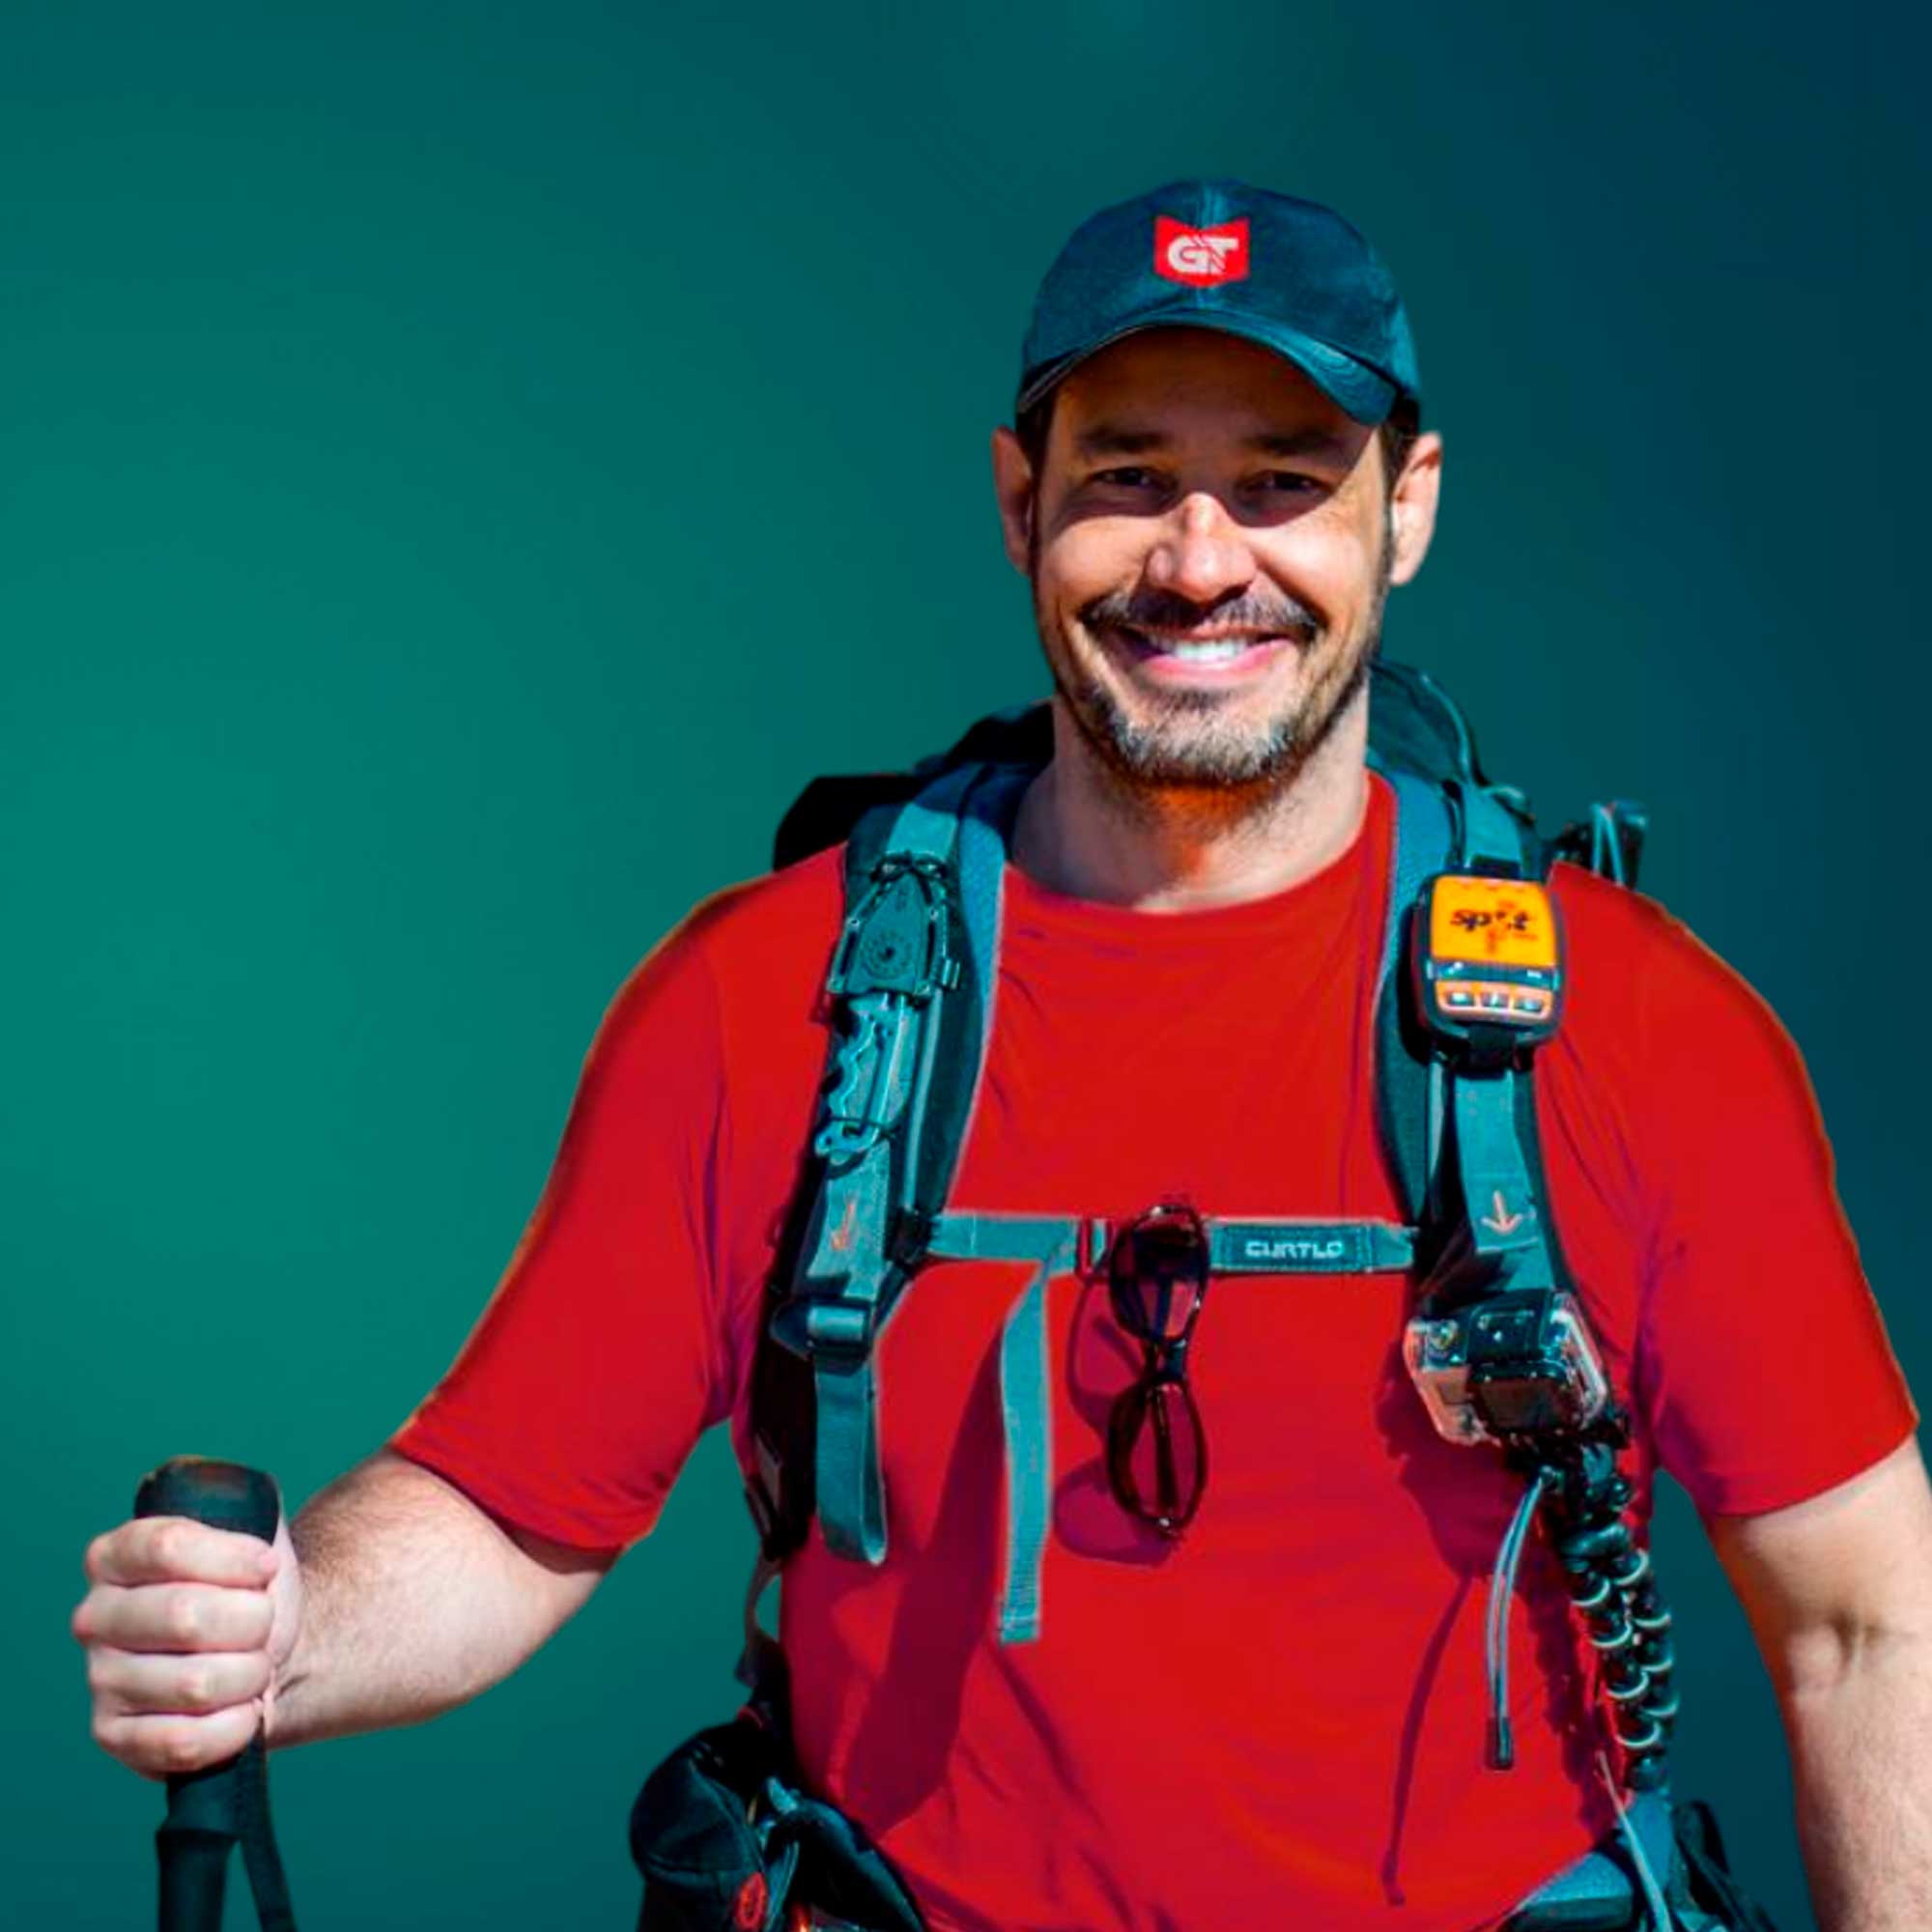 A imagem mostra o apresentador Celso Cavallini de camiseta vermelha, boné com o logo da General Tire e uma mochila de aventura equipada com diversos equipamentos para aventura.